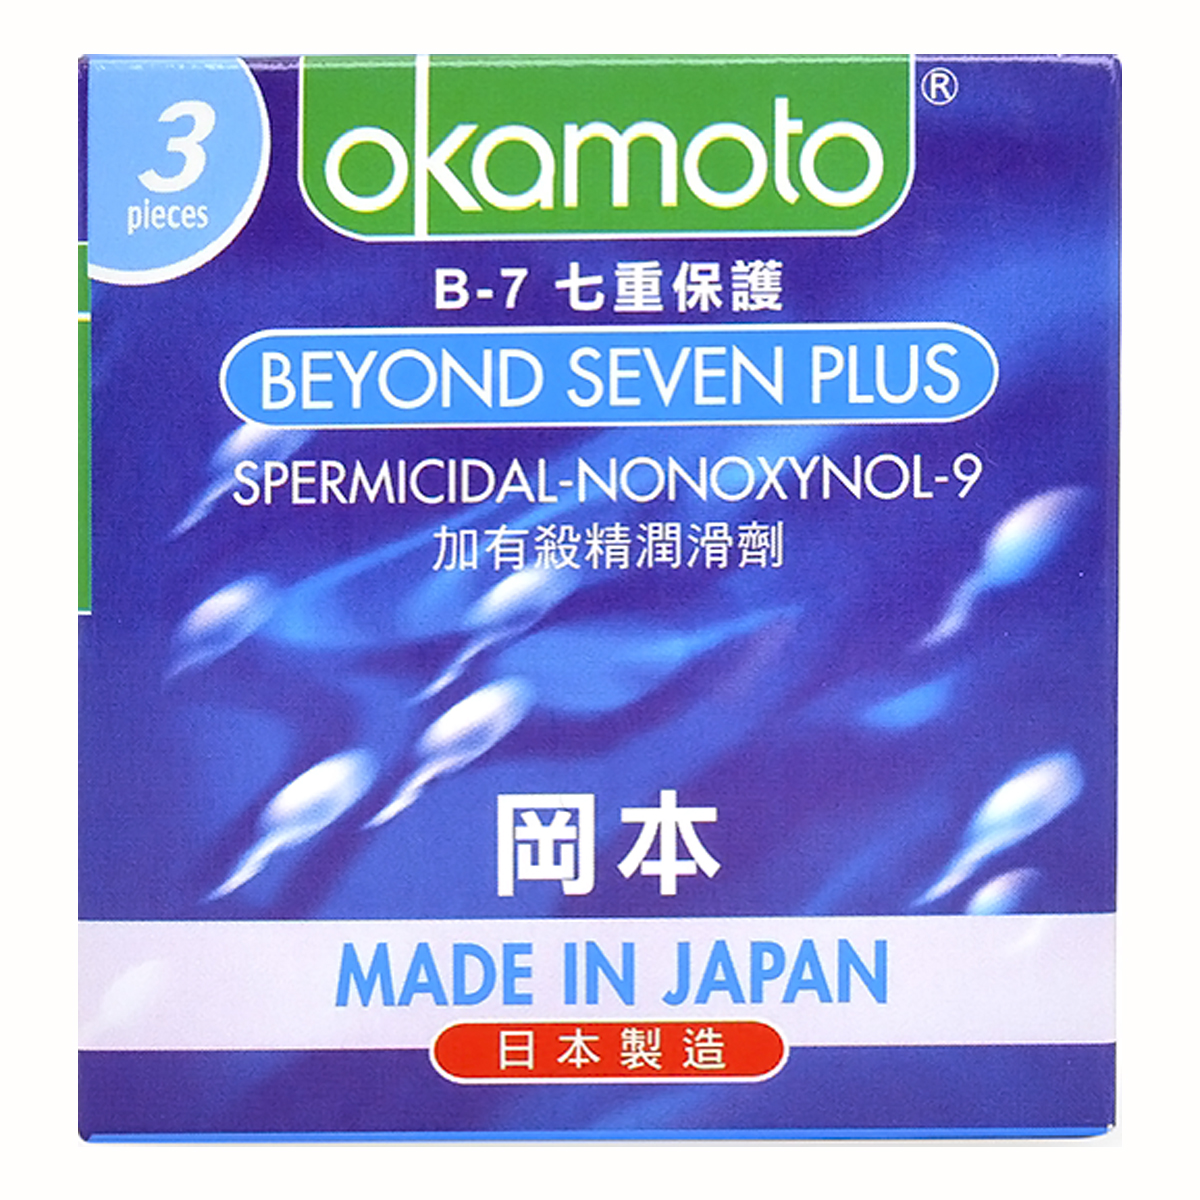 Bao cao su Beyond Seven 54mm Okamoto JAPAN. Siêu mỏng, truyền nhiệt tốt, 7 Tầng Bảo Vệ Hộp 3 Cái. (Che tên sản phẩm khi giao) CONDOM Tặng Gel okamoto bôi trơn.